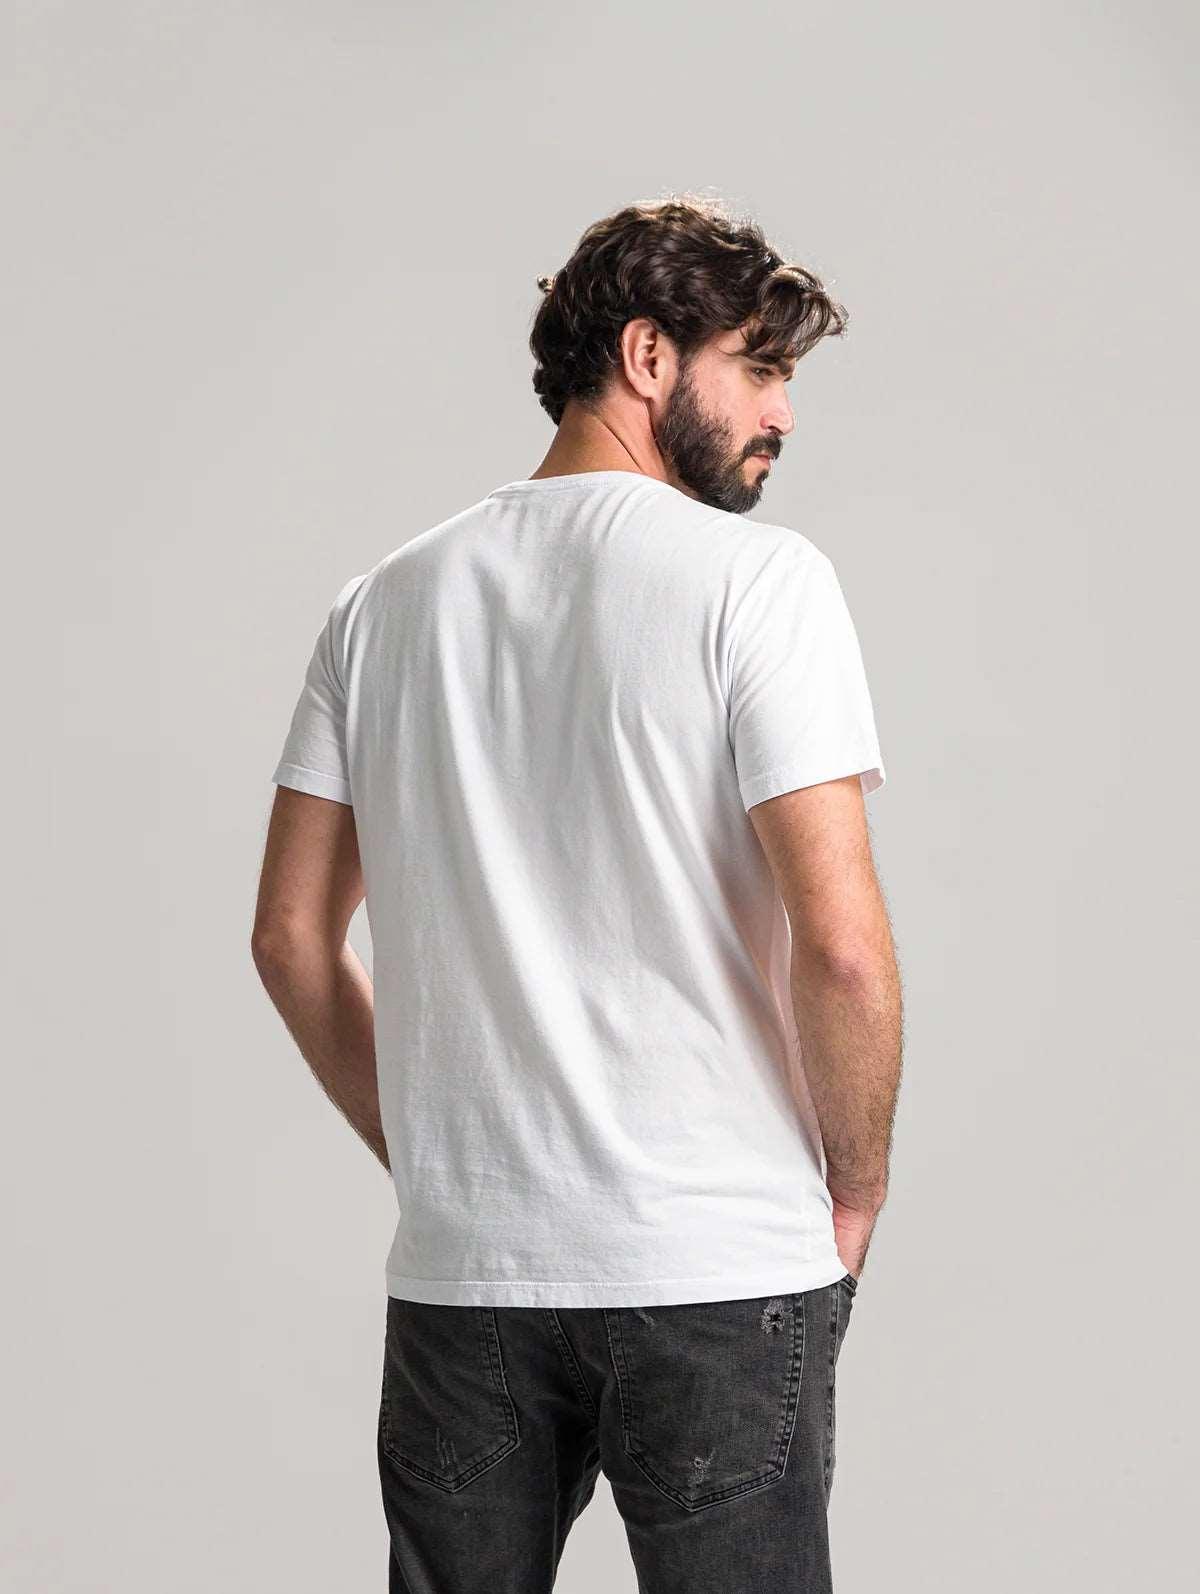 Camiseta Básica Branca com Bolso Kessler - Kessler